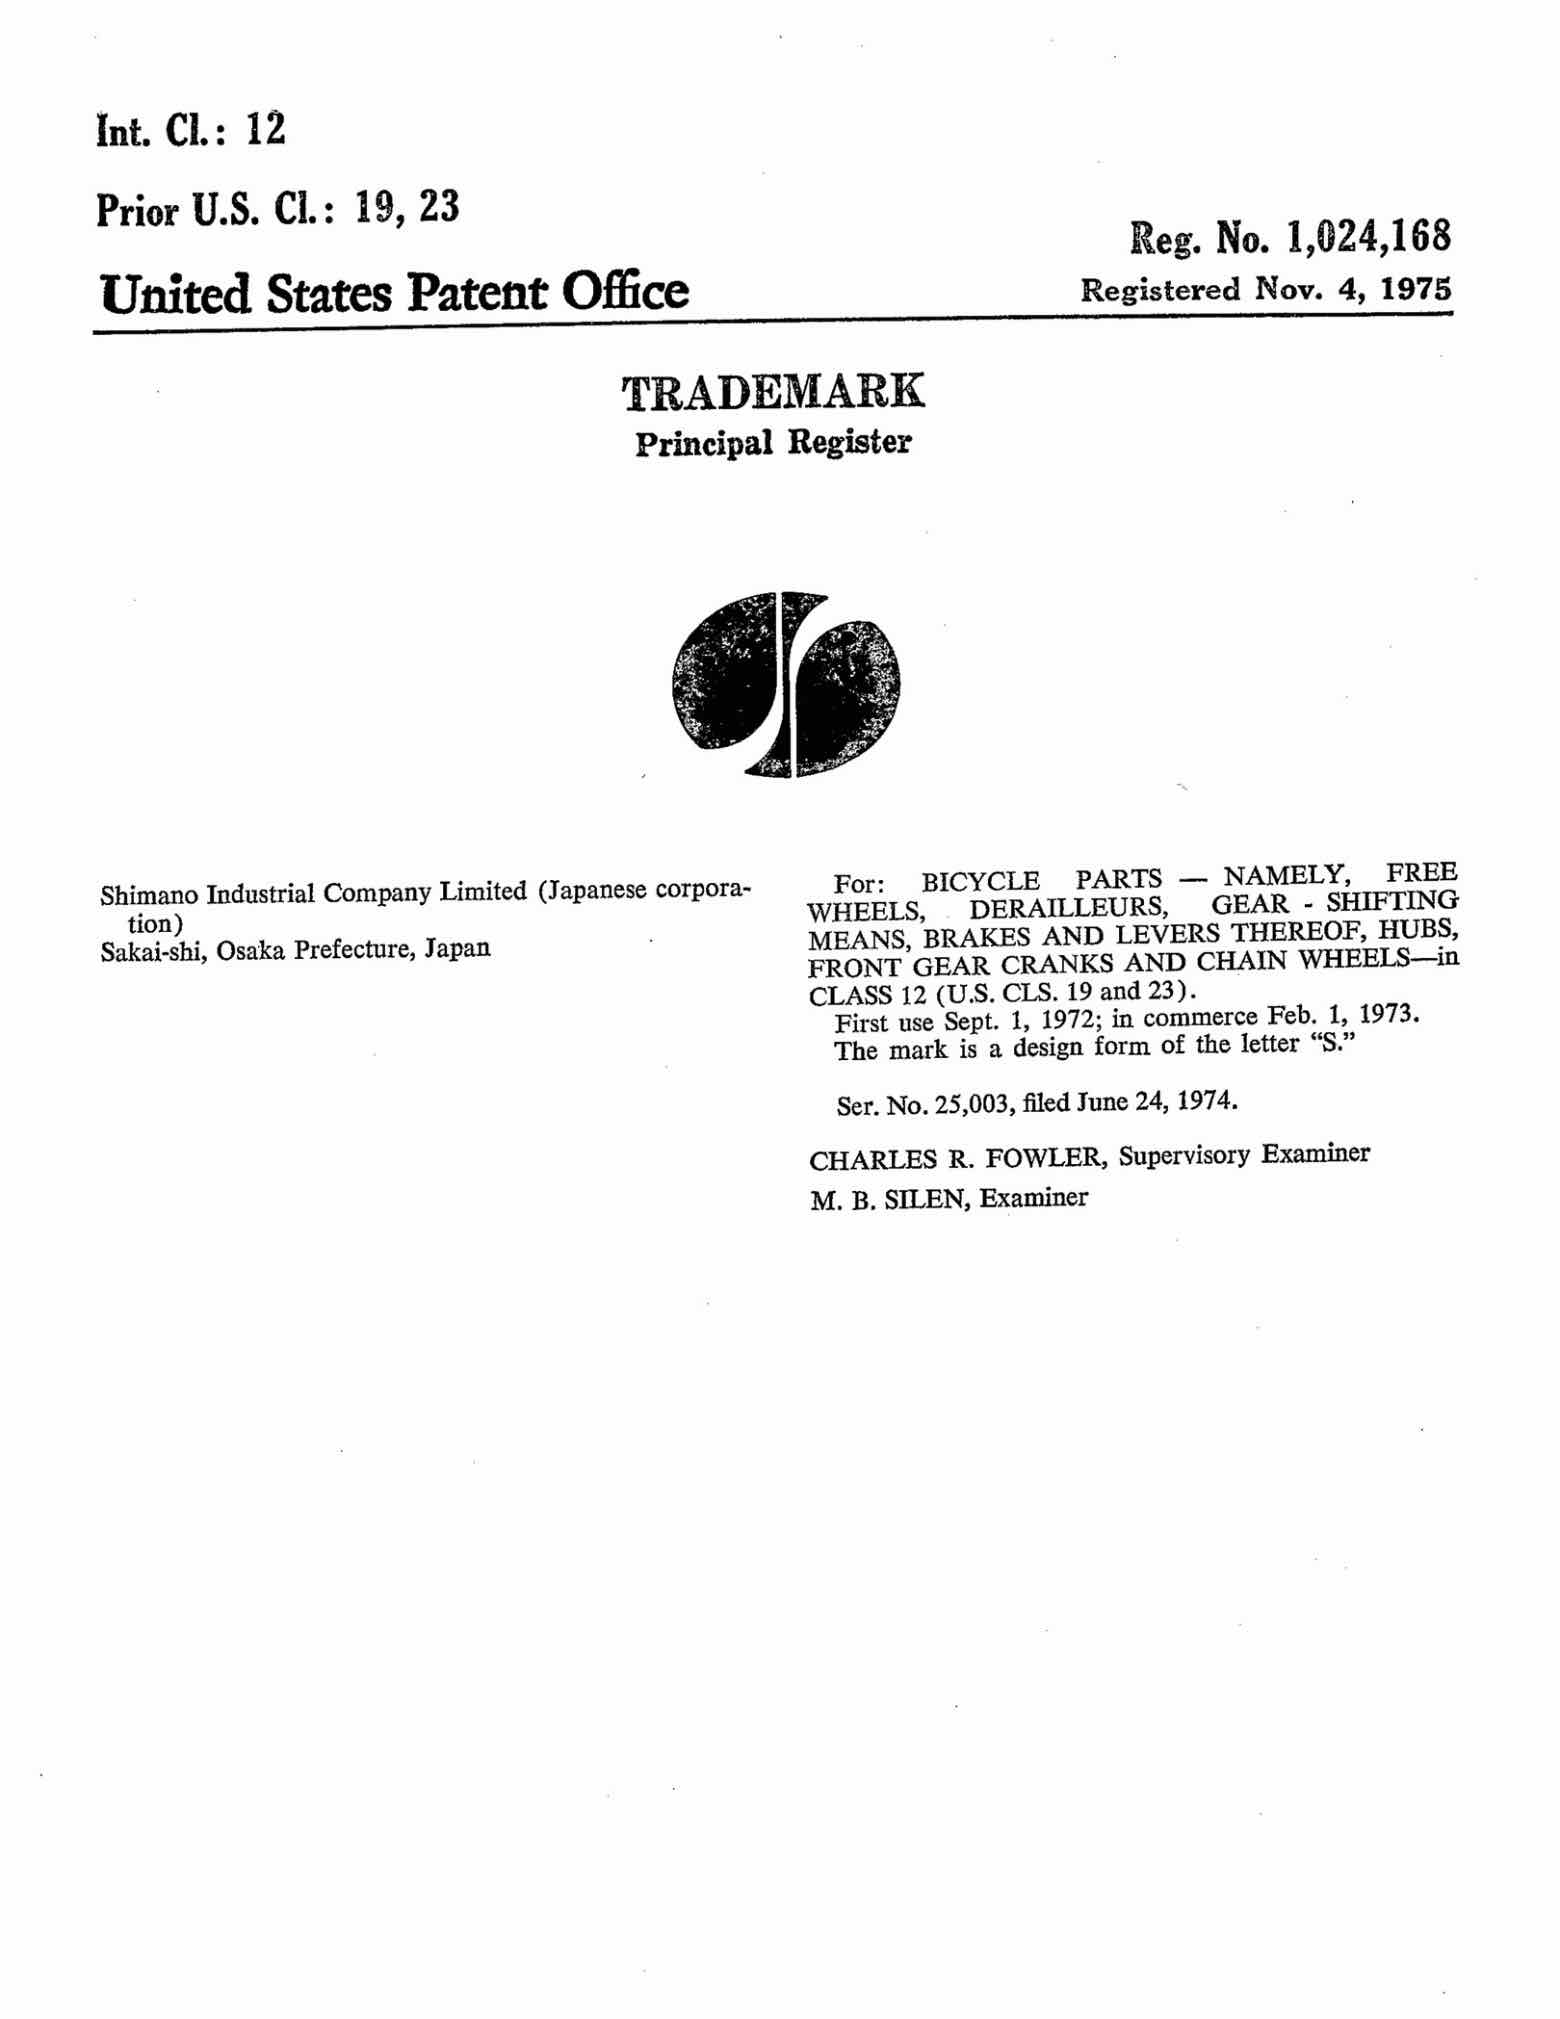 US Trademark 1,024,168 - Shimano main image